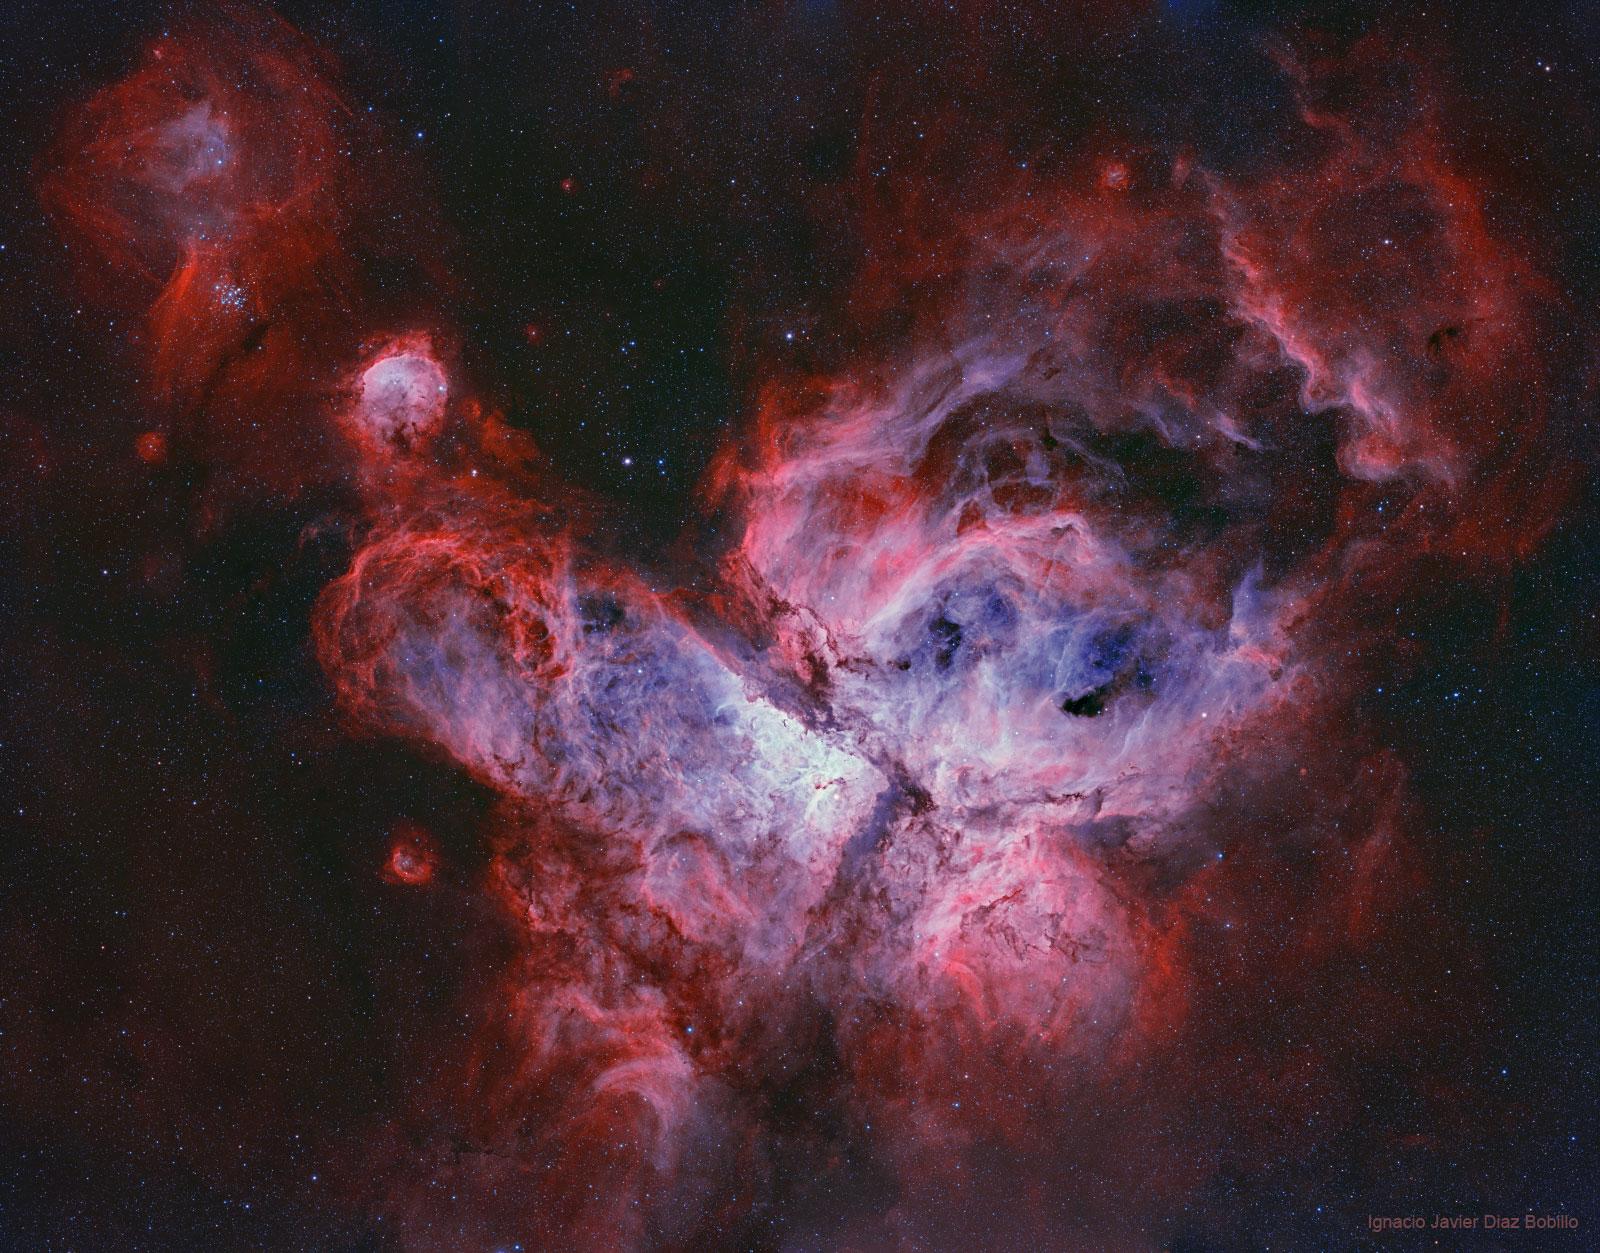 بنية سديميّة تظهر كإندفاعات من نقطة مركزية بألوان بيضاء فزرقاء فحمراء وحوله بعض النجوم